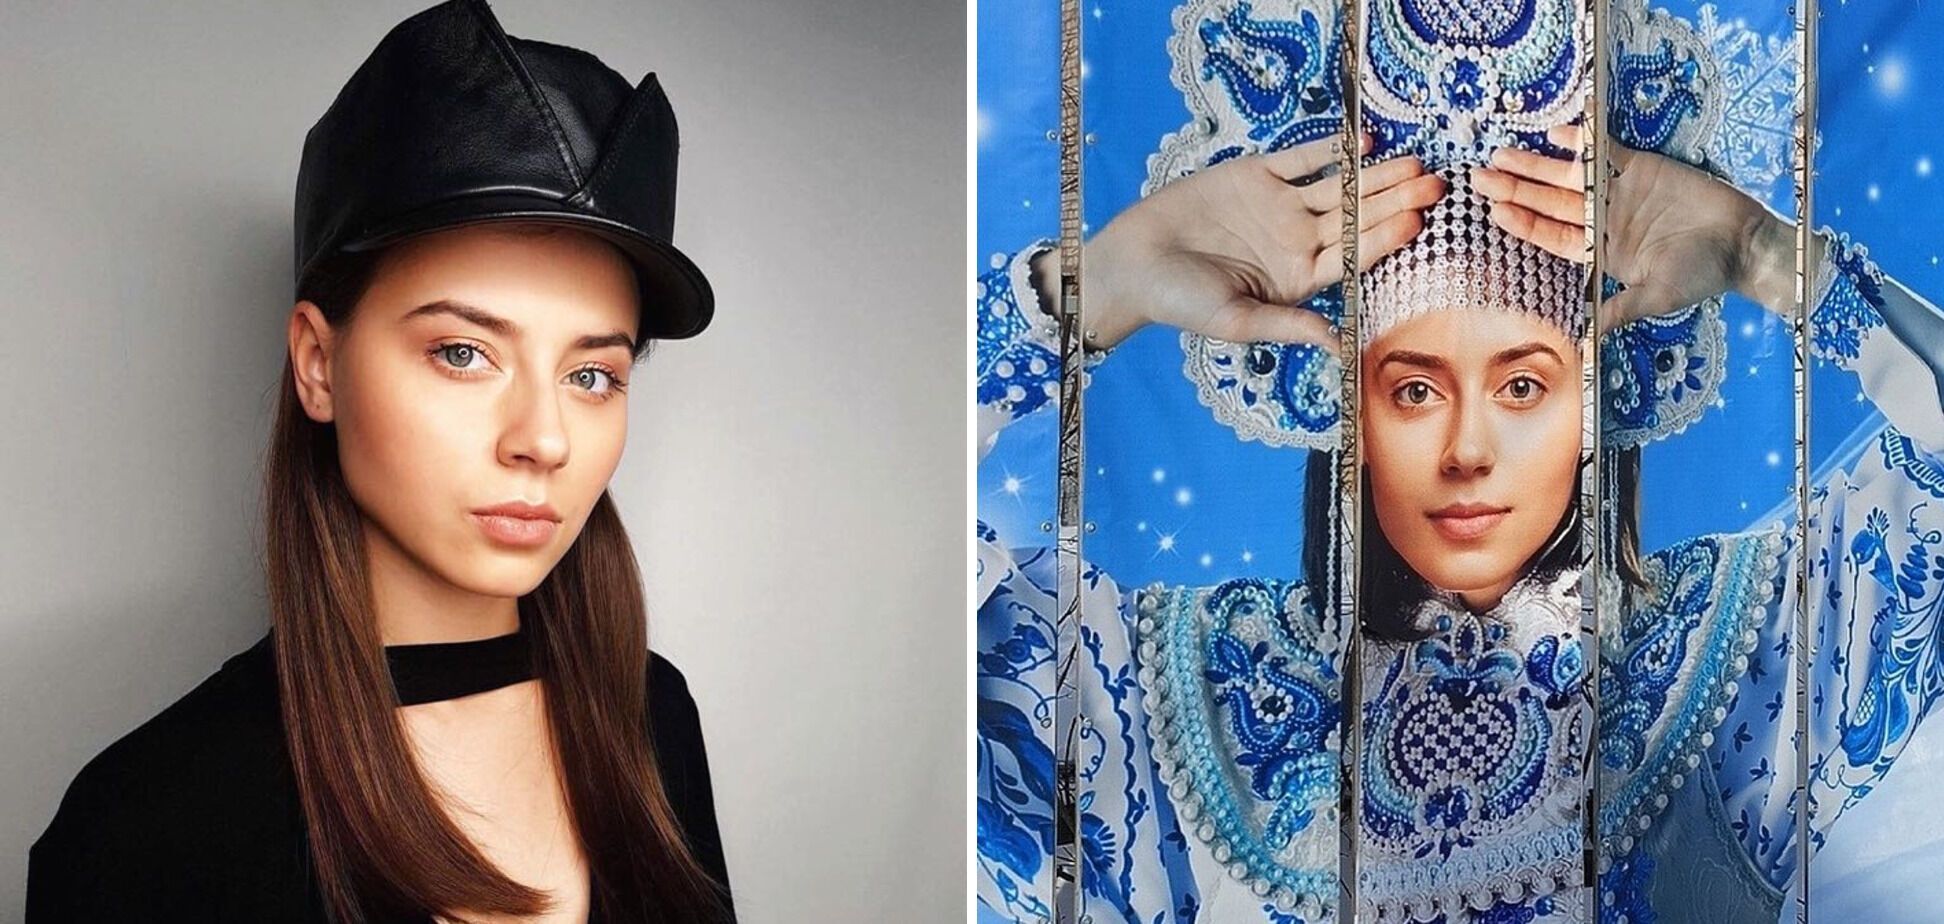 В РФ для баннера использовали лица Саши Грей и украинской модели: разъяренные россияне подняли шум и заставили убрать фото